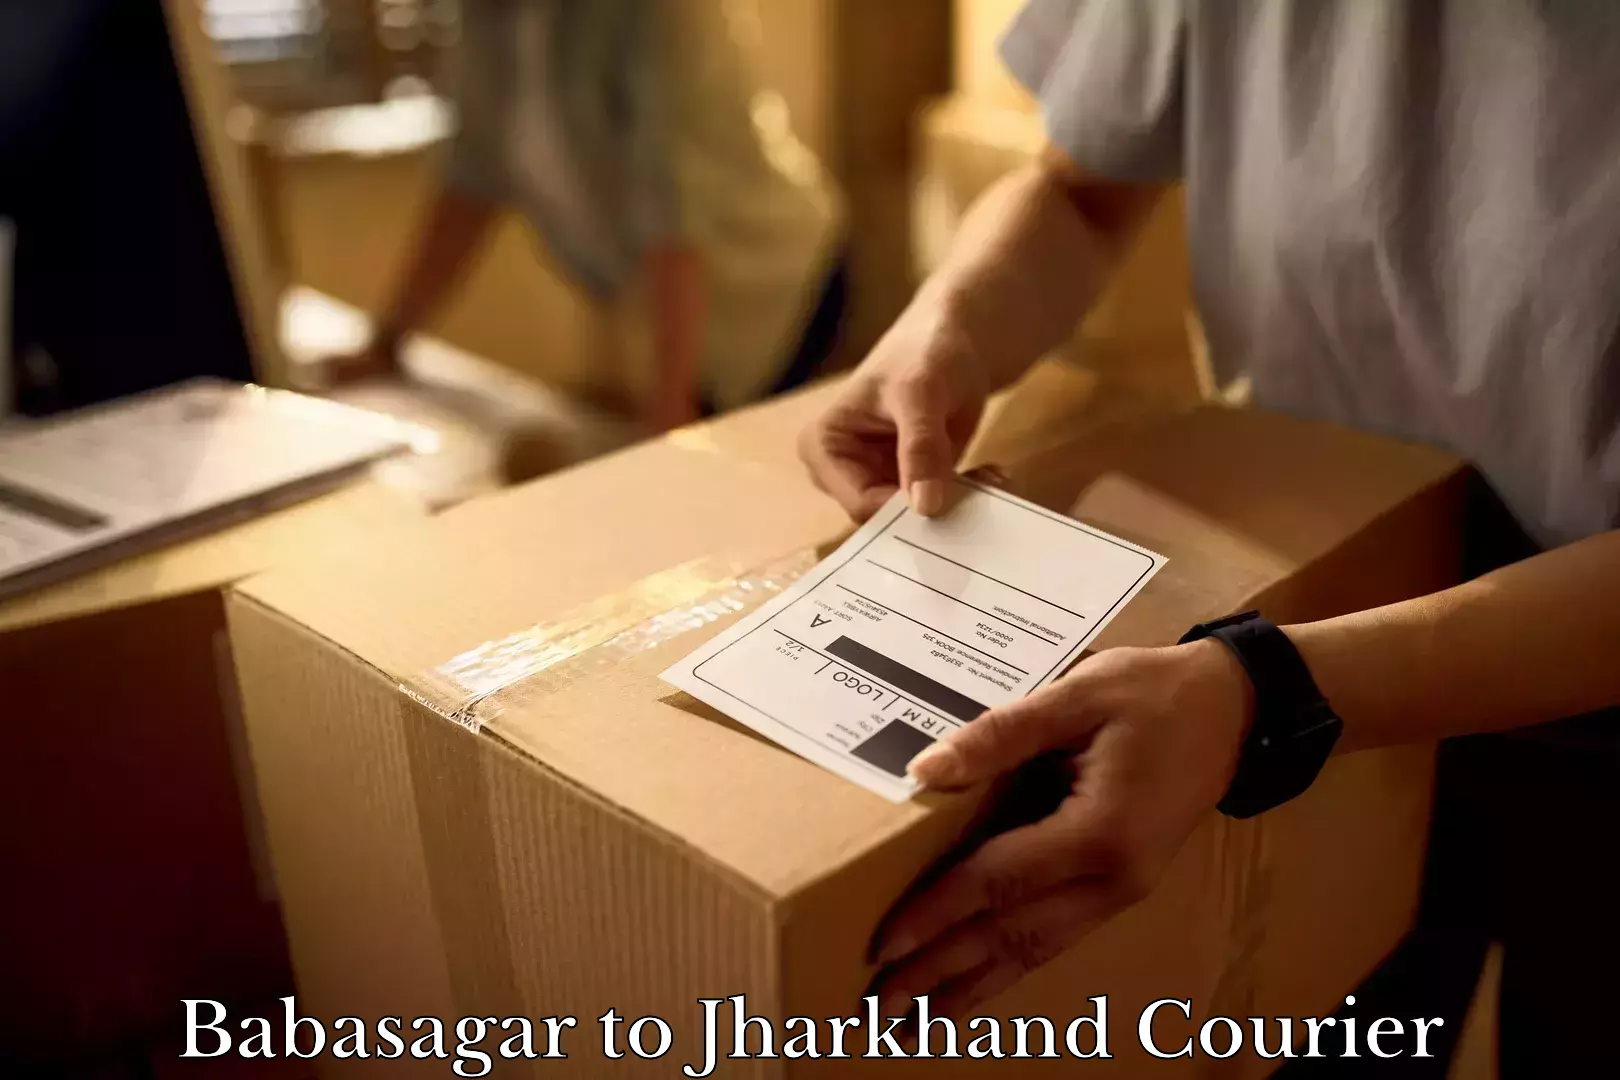 Furniture moving service Babasagar to Padma Hazaribagh